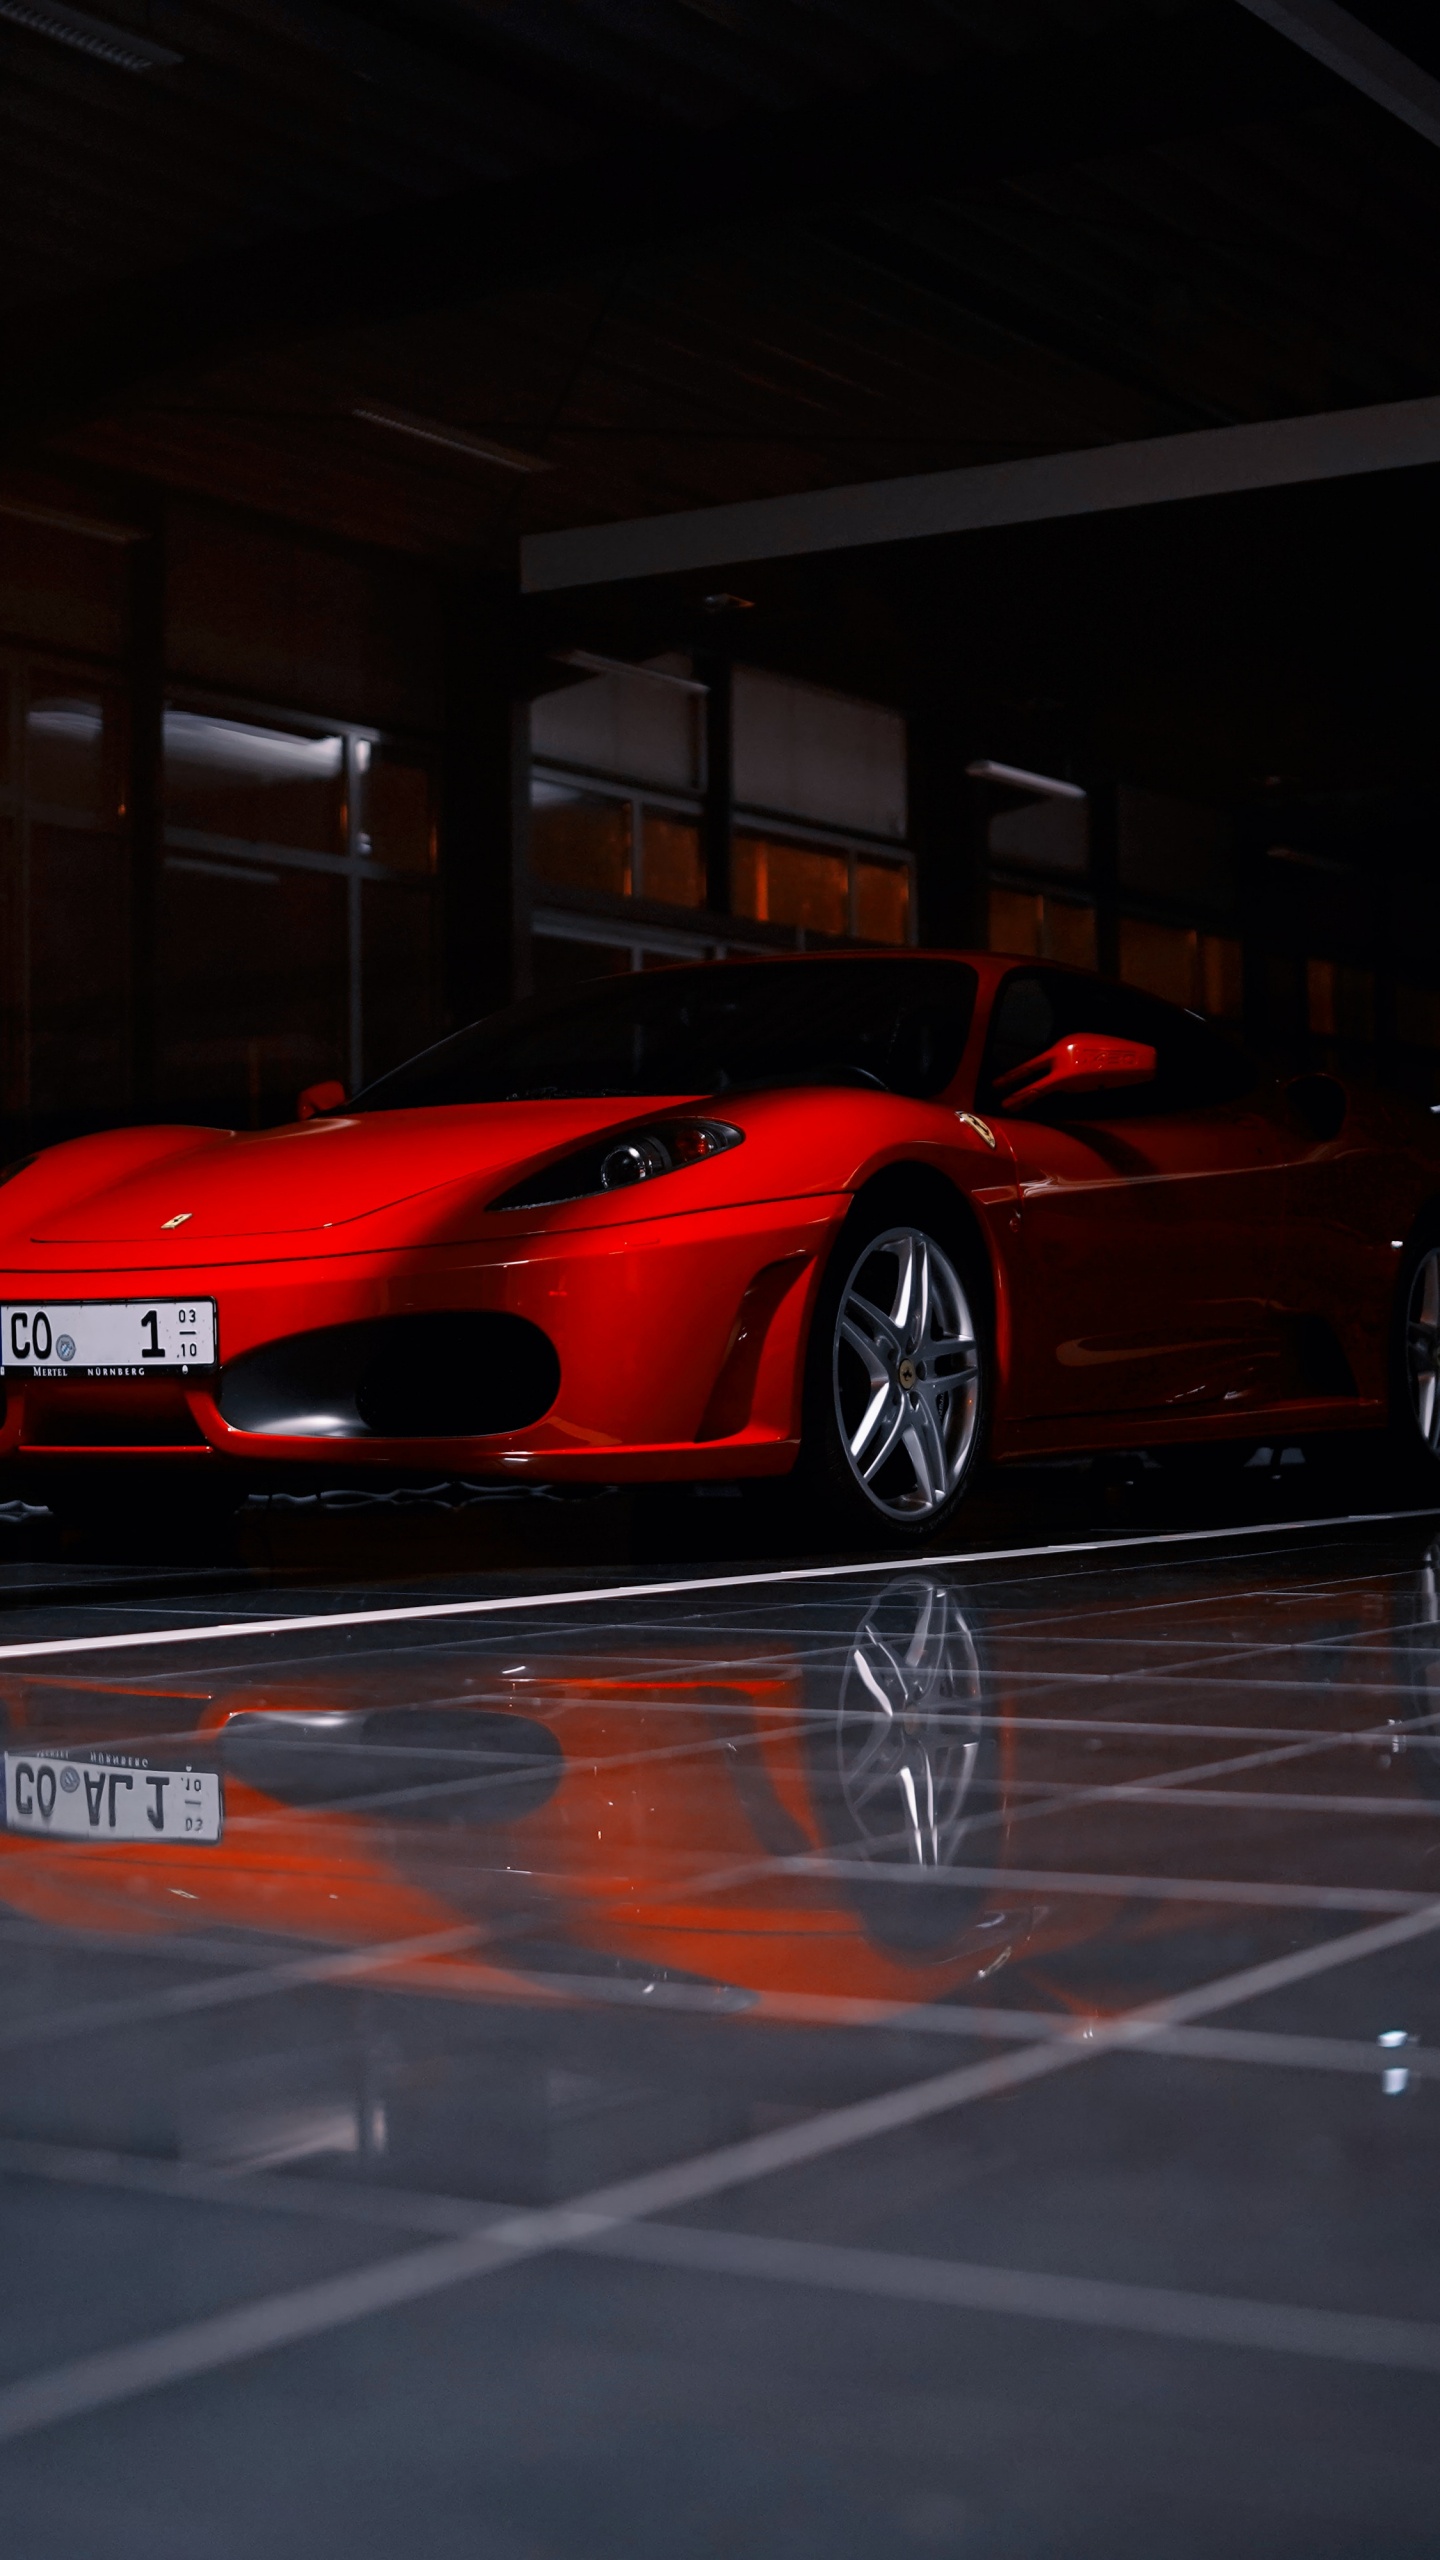 Roter Ferrari 458 Italia Auf Parkplatz Geparkt. Wallpaper in 1440x2560 Resolution